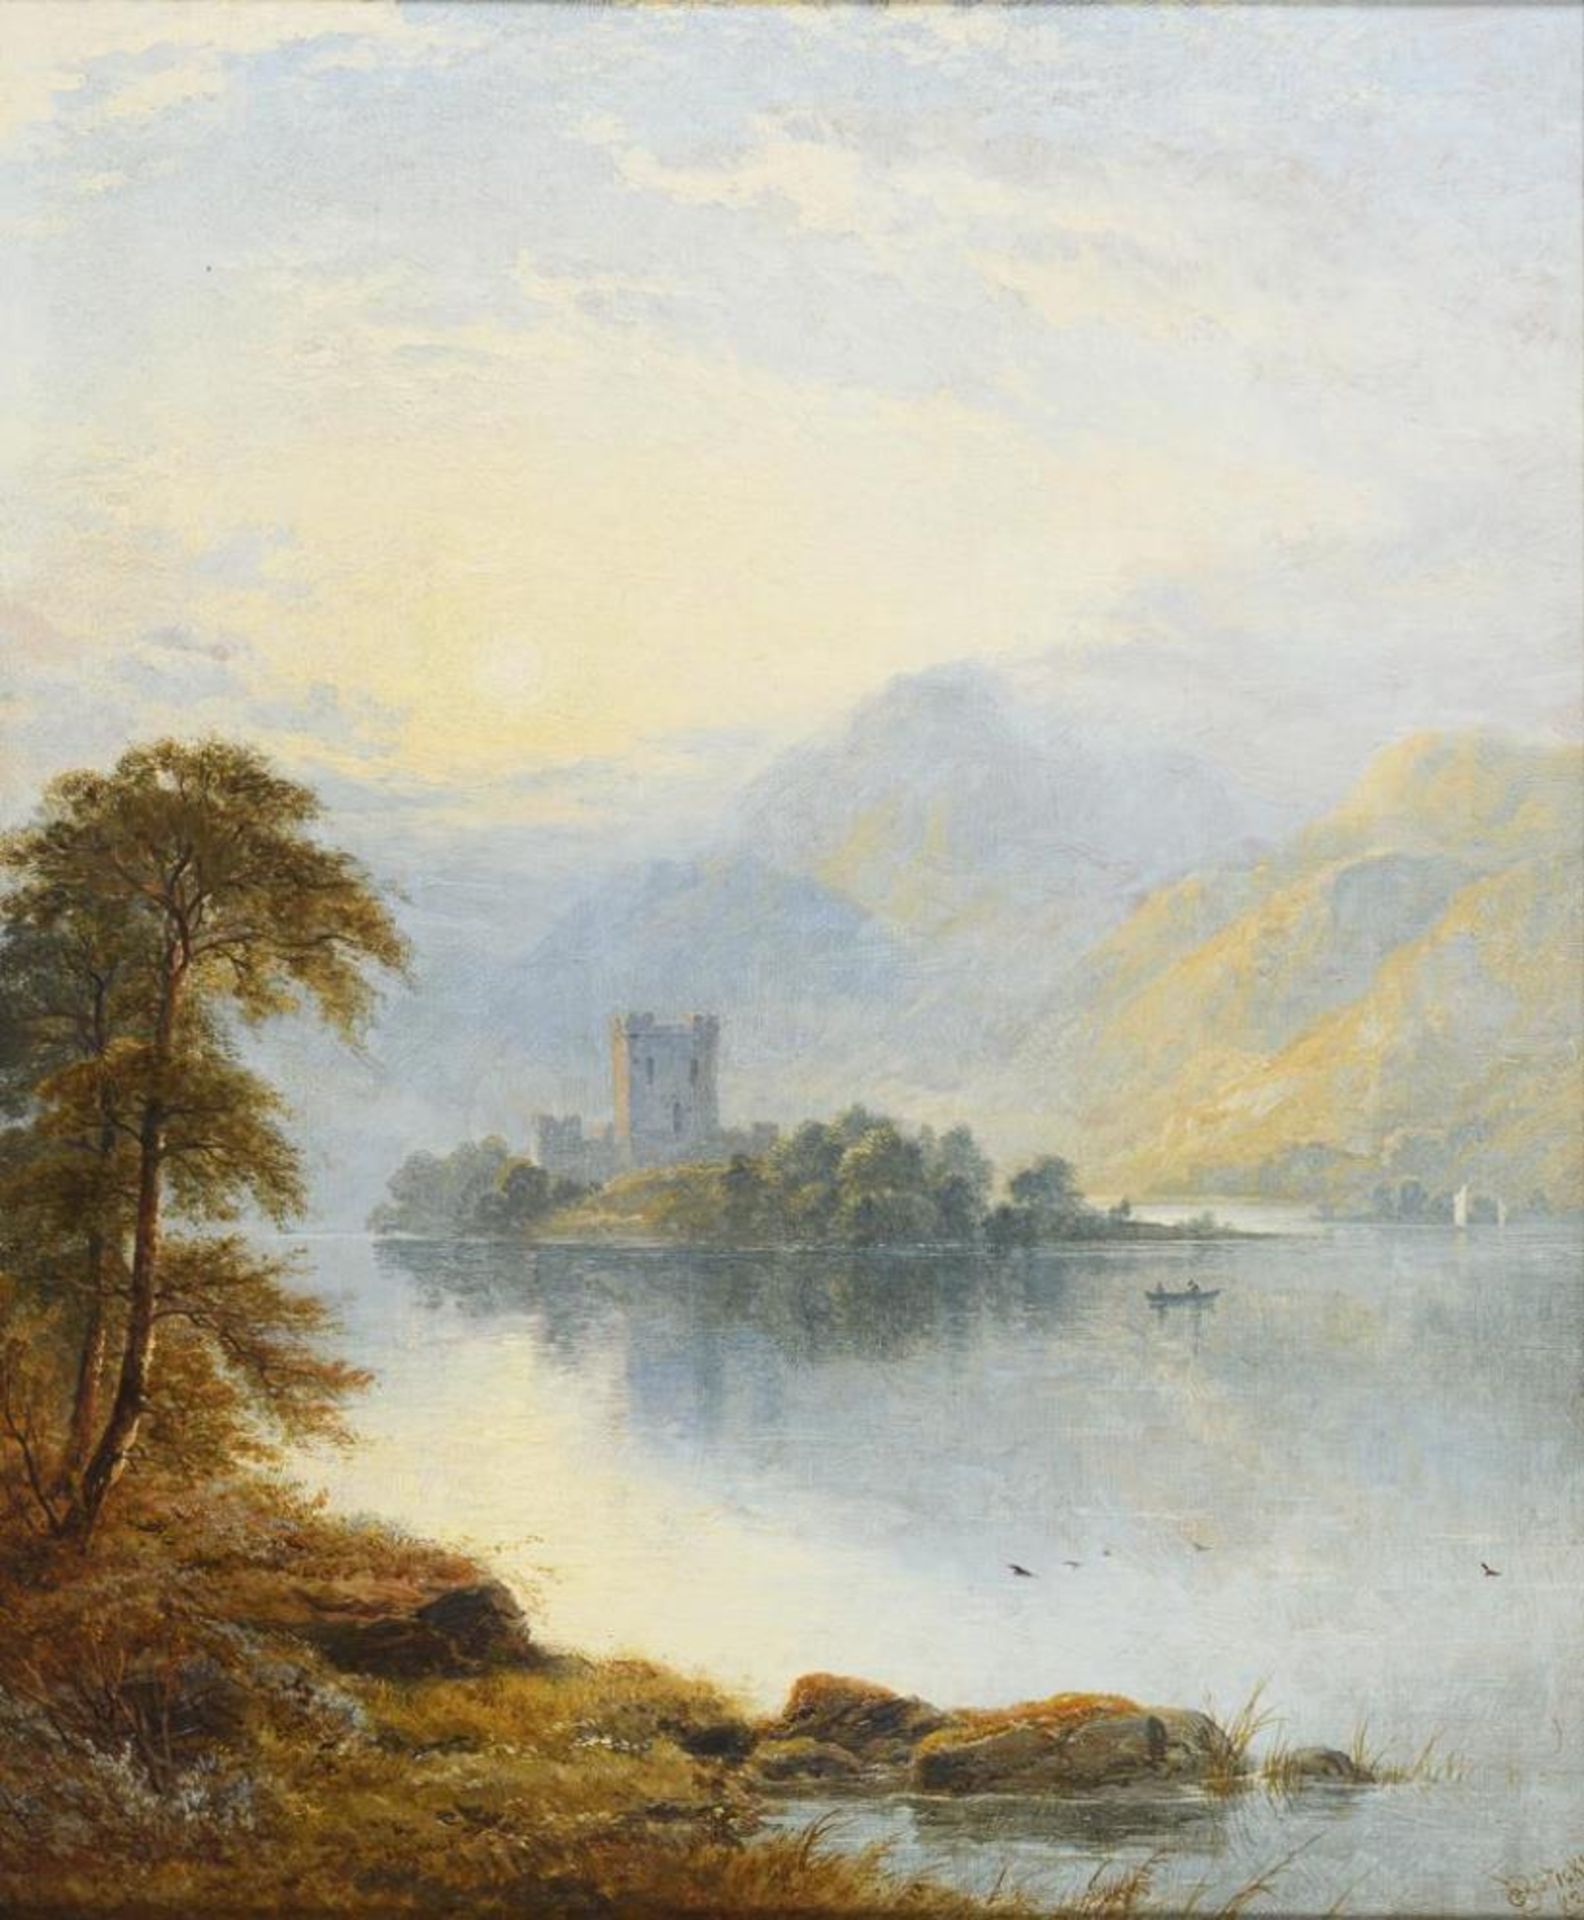 STICKS, George Blackie (1843 - 1938). Irische Landschaft mit kleiner Burg auf einer Insel.